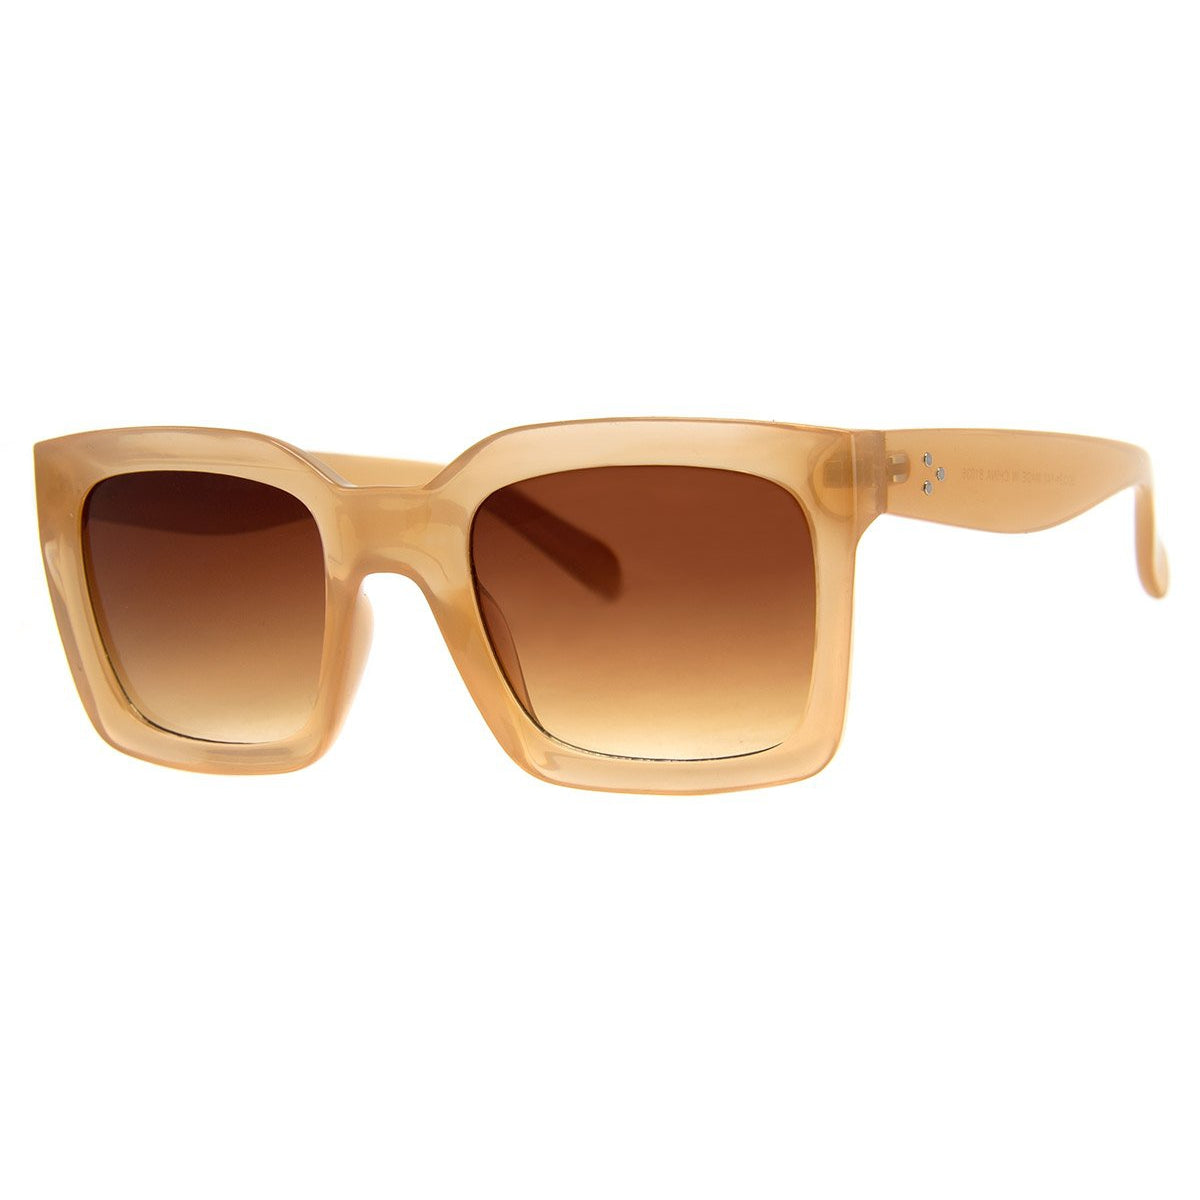 Realm Sunglasses - Cream